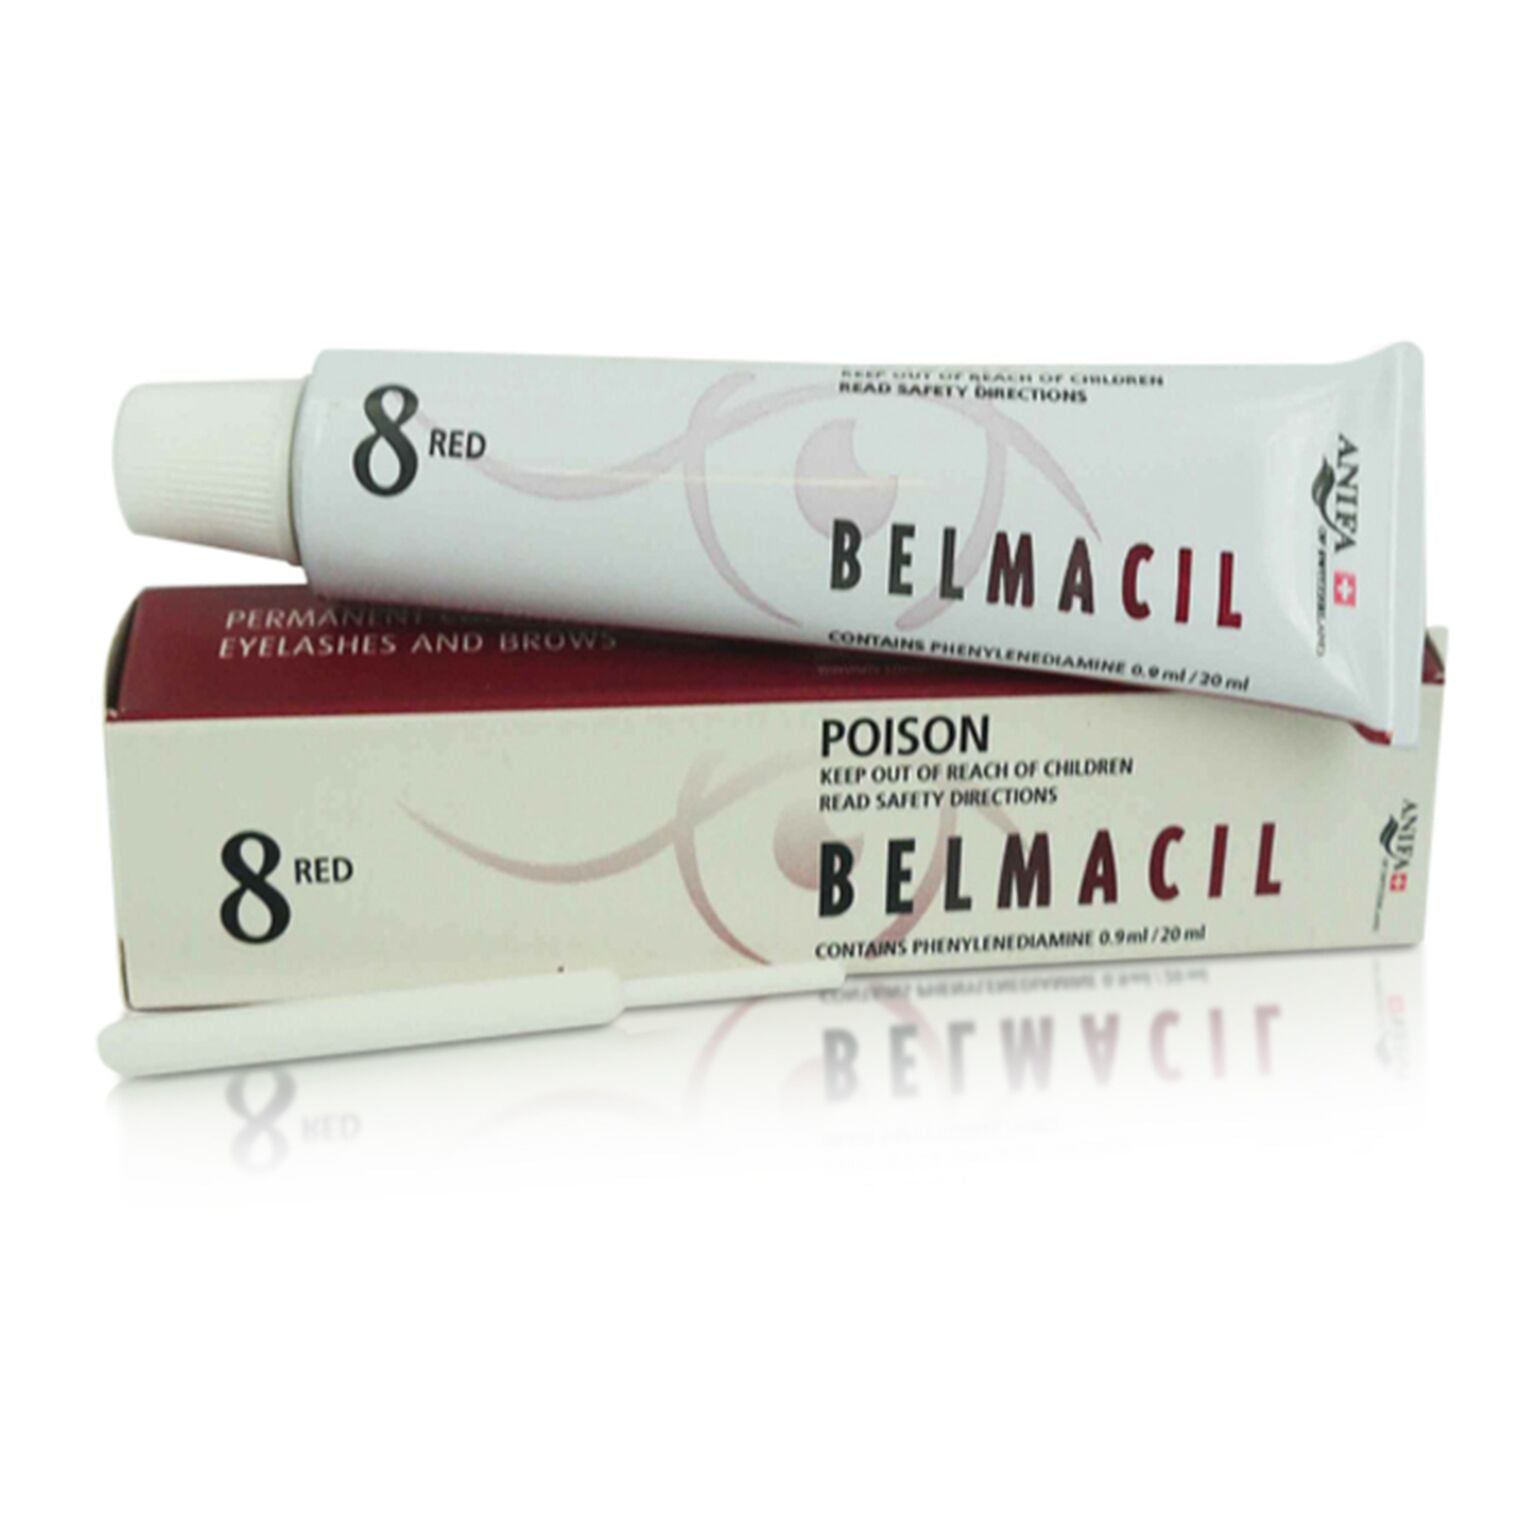 Belmacil Tint Kit - Full size Pack